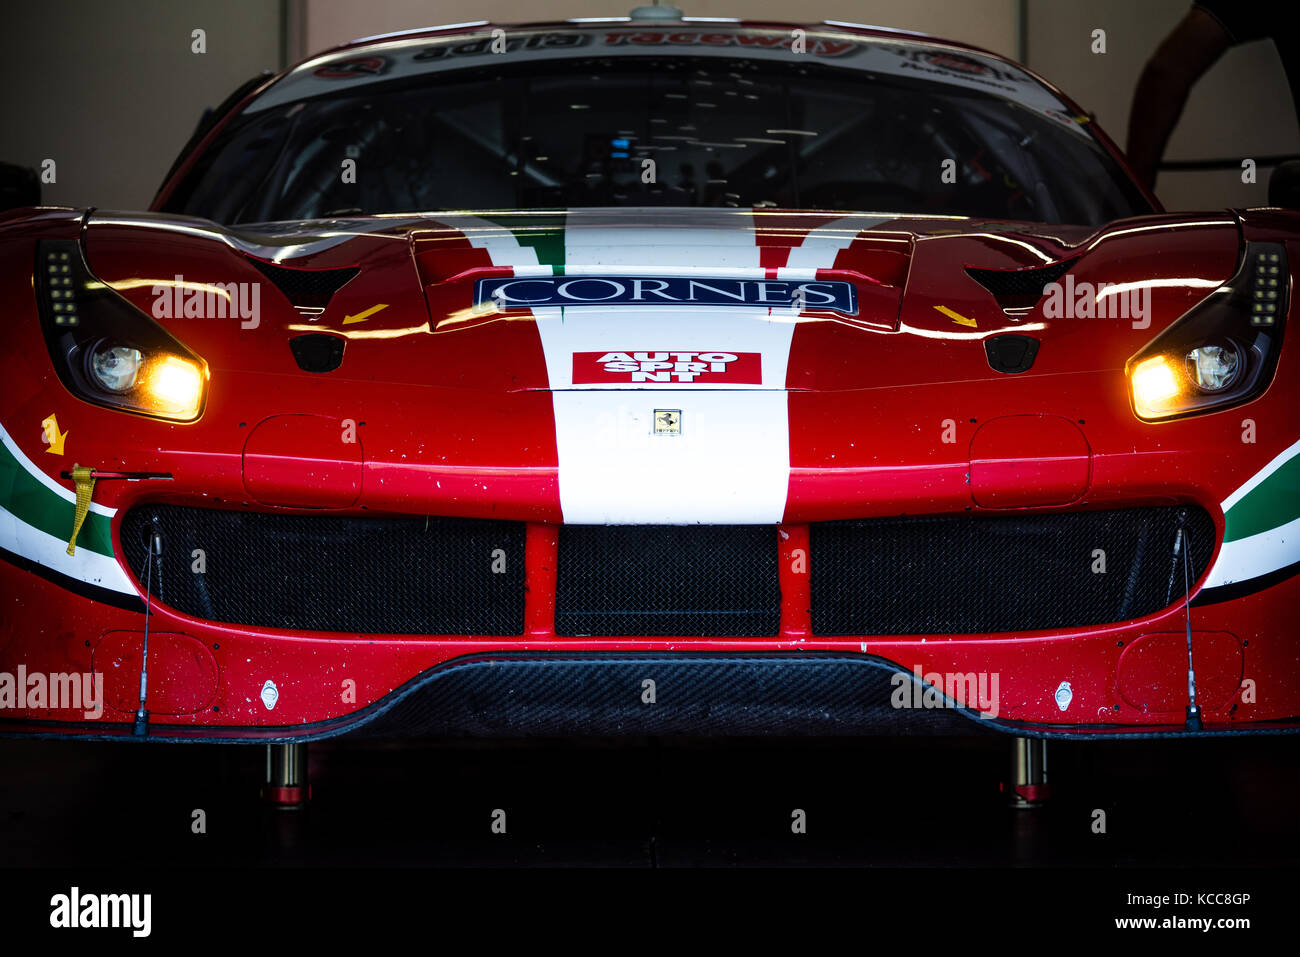 Vallelunga, en Italie le 24 septembre 2017. touring ferrari racing voiture rouge garée dans les enclos phares sur nez détail Banque D'Images